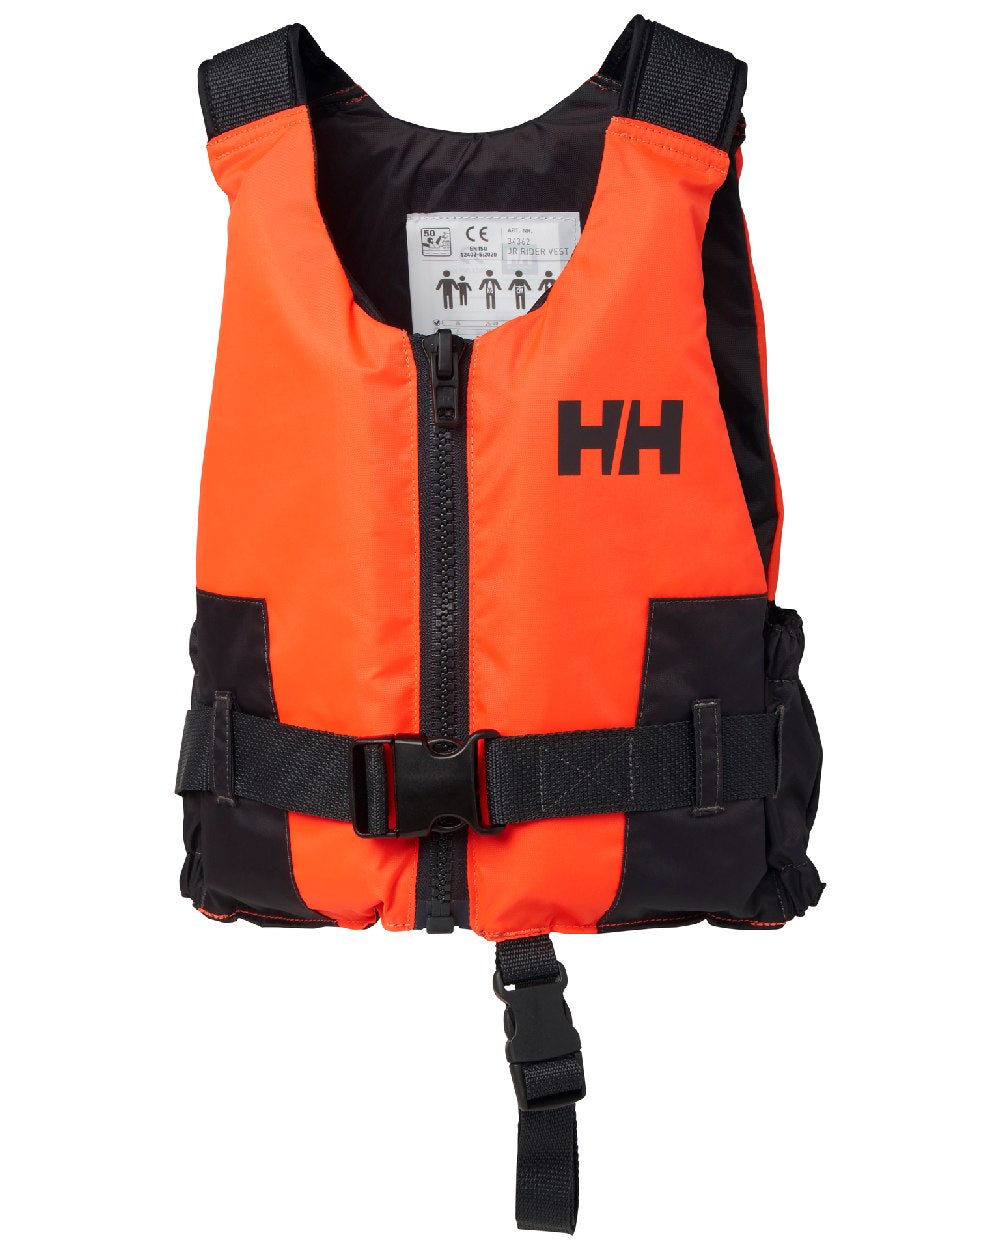 Fluor Orange coloured Helly Hansen Juniors Rider Vest on white background 